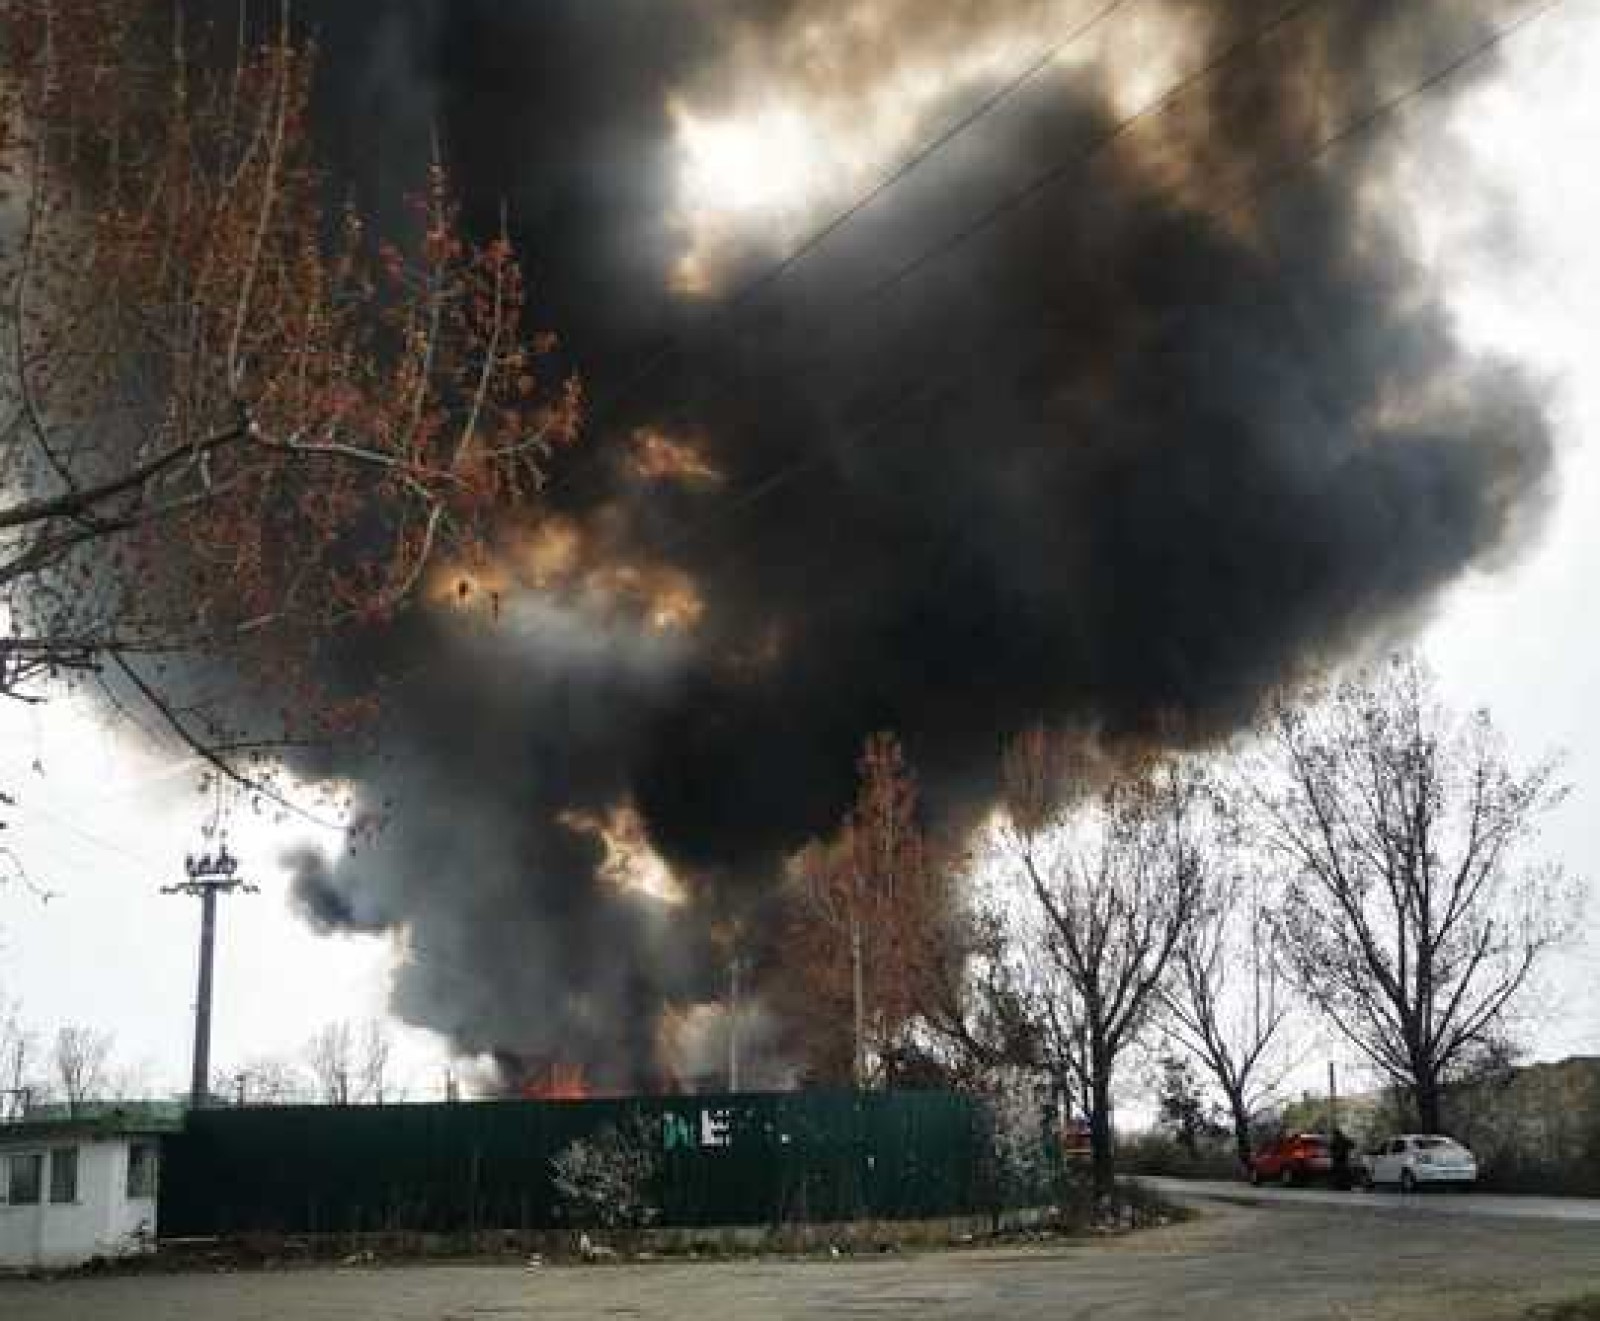 Τελευταία νέα!  Φωτιά τροφοδοτήθηκε στα περίχωρα του Βουκουρεστίου!  Η κυκλοφορία των ζωνών έχει αποκλειστεί.  ΒΙΝΤΕΟ – Evenimentul Zilei